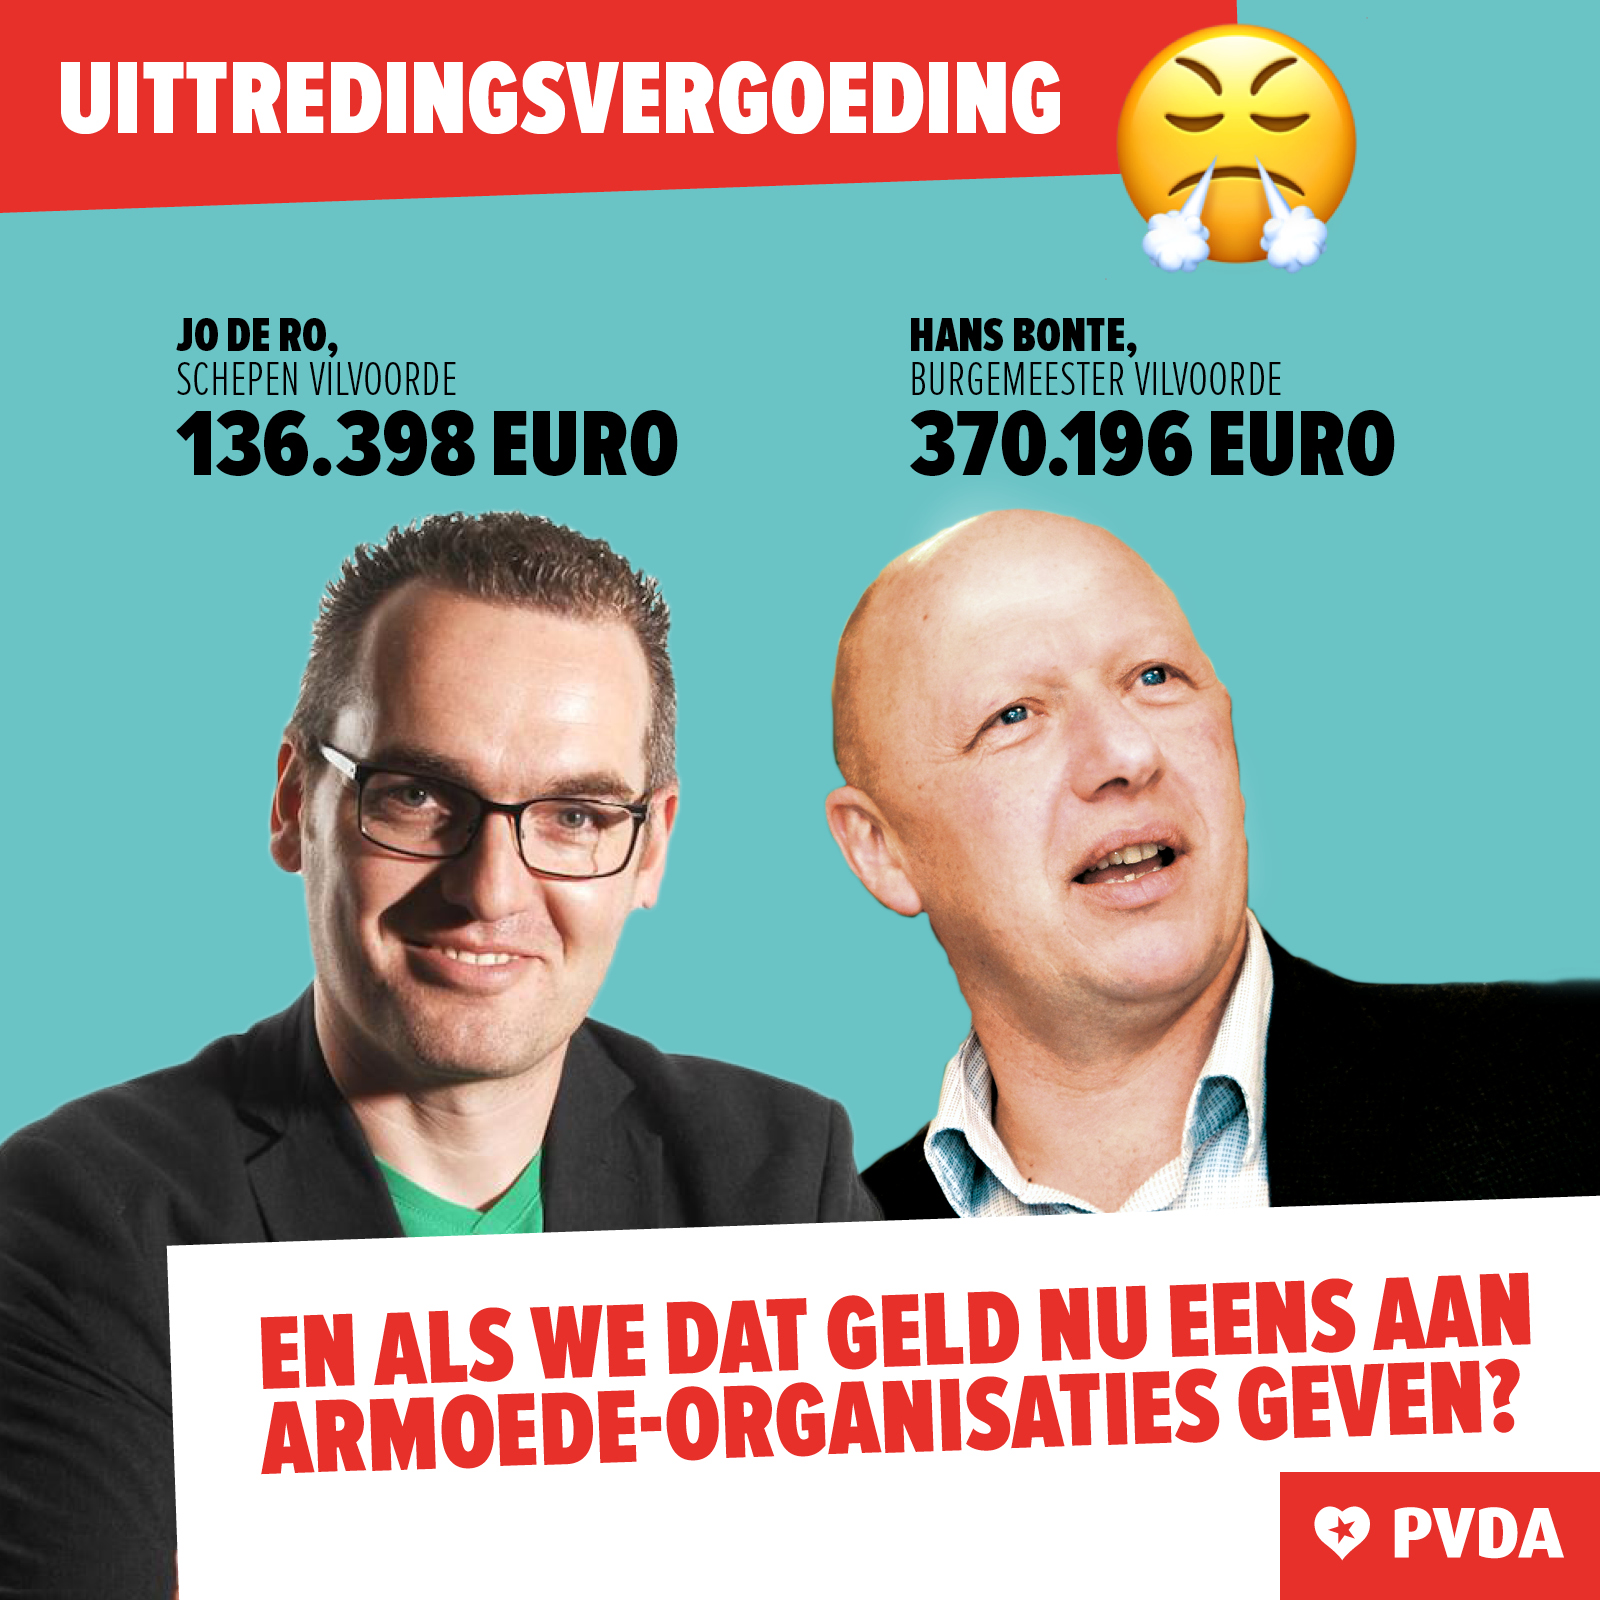 PVDA vraagt Hans Bonte en Jo De Ro om uittredingsvergoedingen te doneren aan Vilvoordse armoede-organisaties